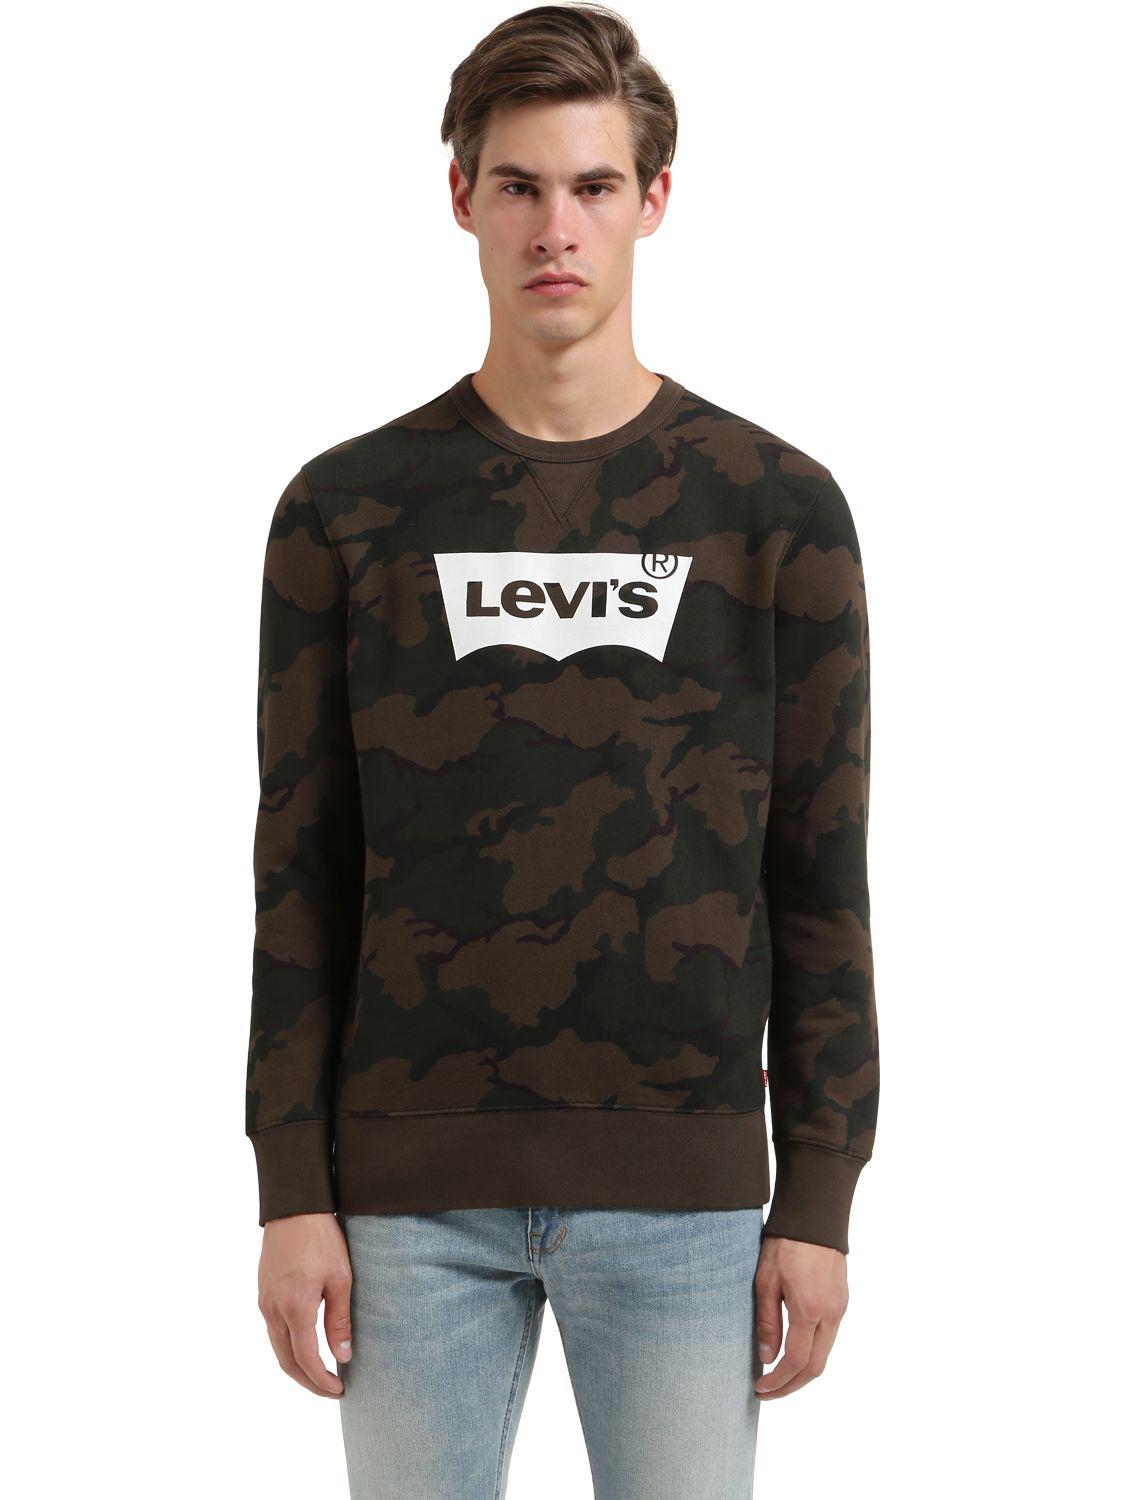 Levi's Jeans Original Sweatshirt Camo Black Housemark Jumper batwing Sportswear 